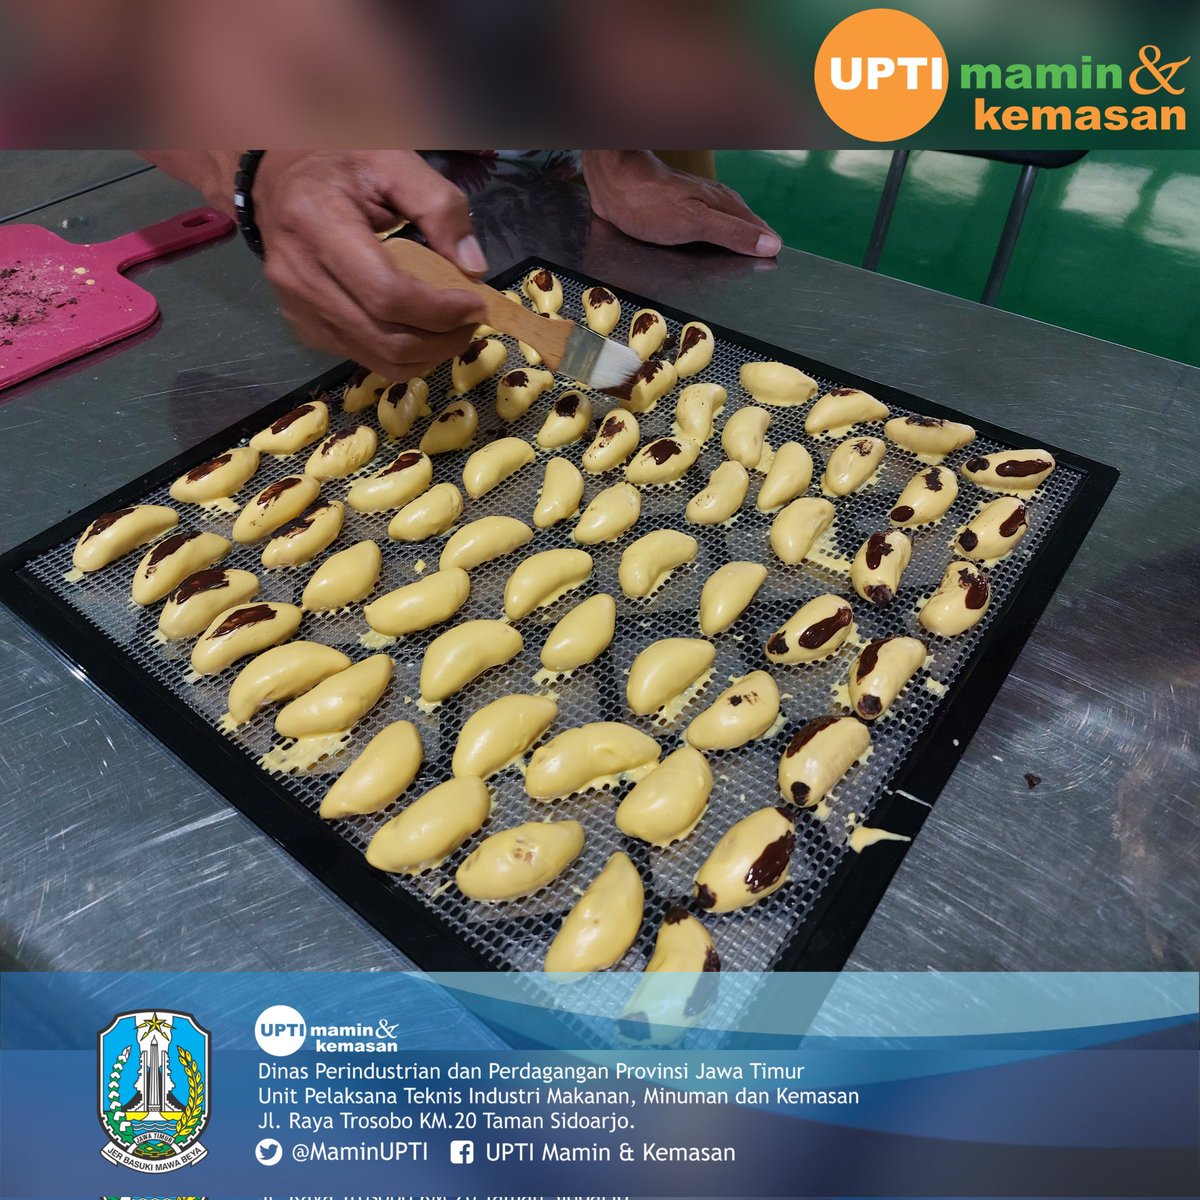 UPTI Mamin dan Kemasan melakukan uji coba pembuatan 'Banana Cookies” pada tanggal 18 April 2023.

#resepkekinian #jajanankekinian #kuekering #kuelebaran #resepkue